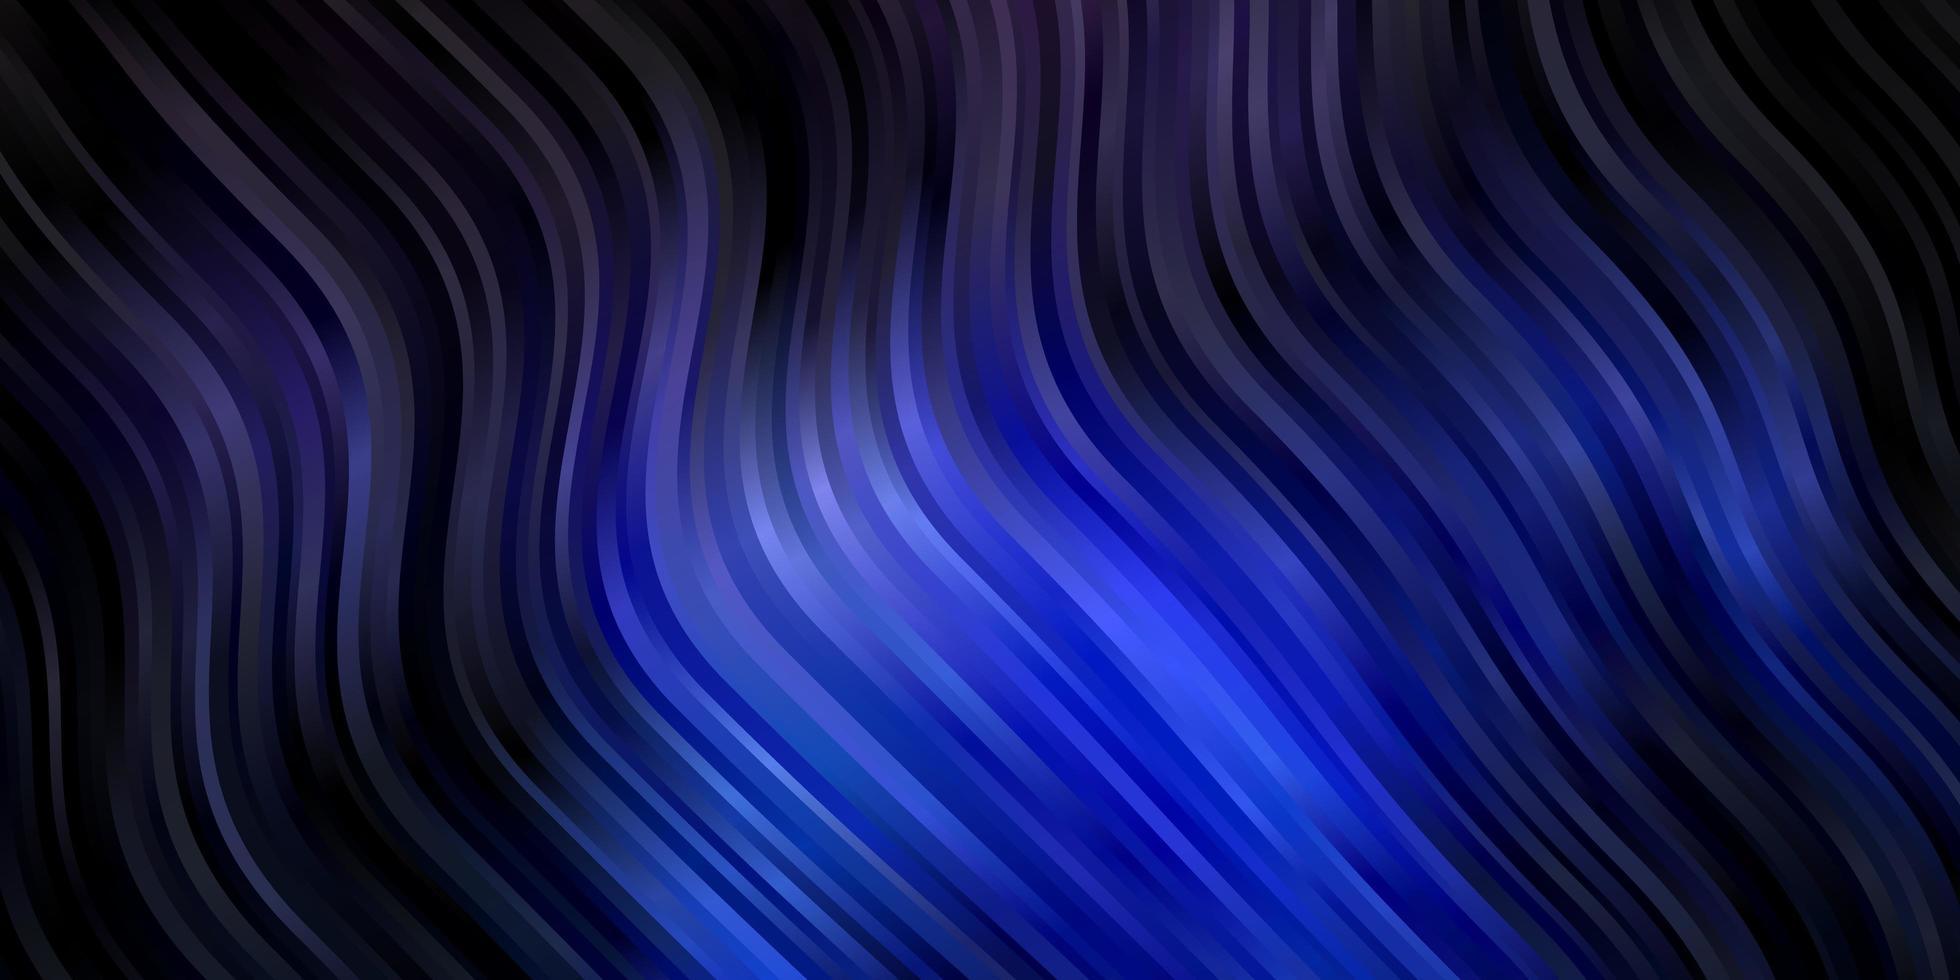 sfondo vettoriale blu scuro con curve.